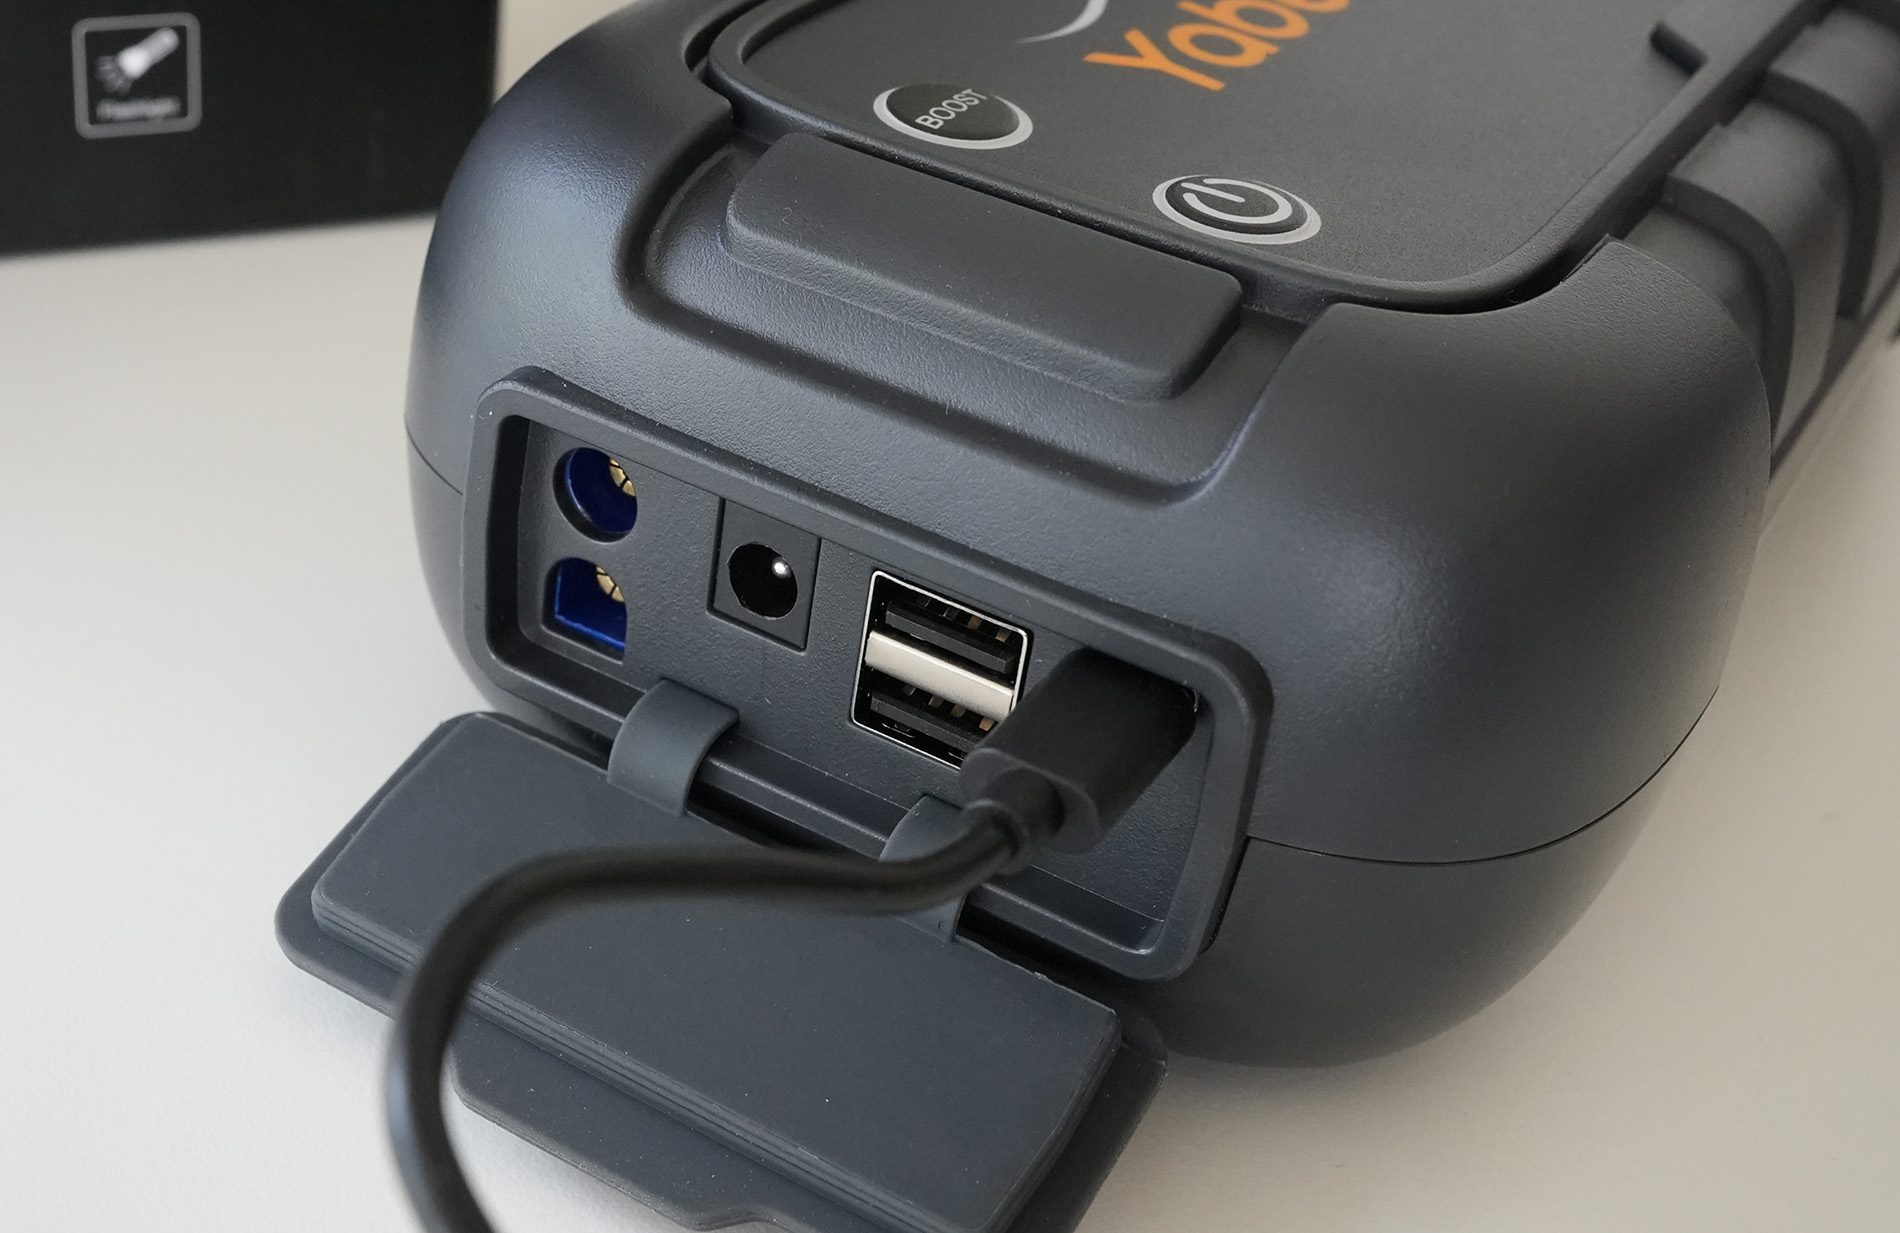 Die USB-C-Buchse kann sowohl zum Aufladen der Powerbank selbst als auch zum Versorgen anderer Geräte verwendet werden.